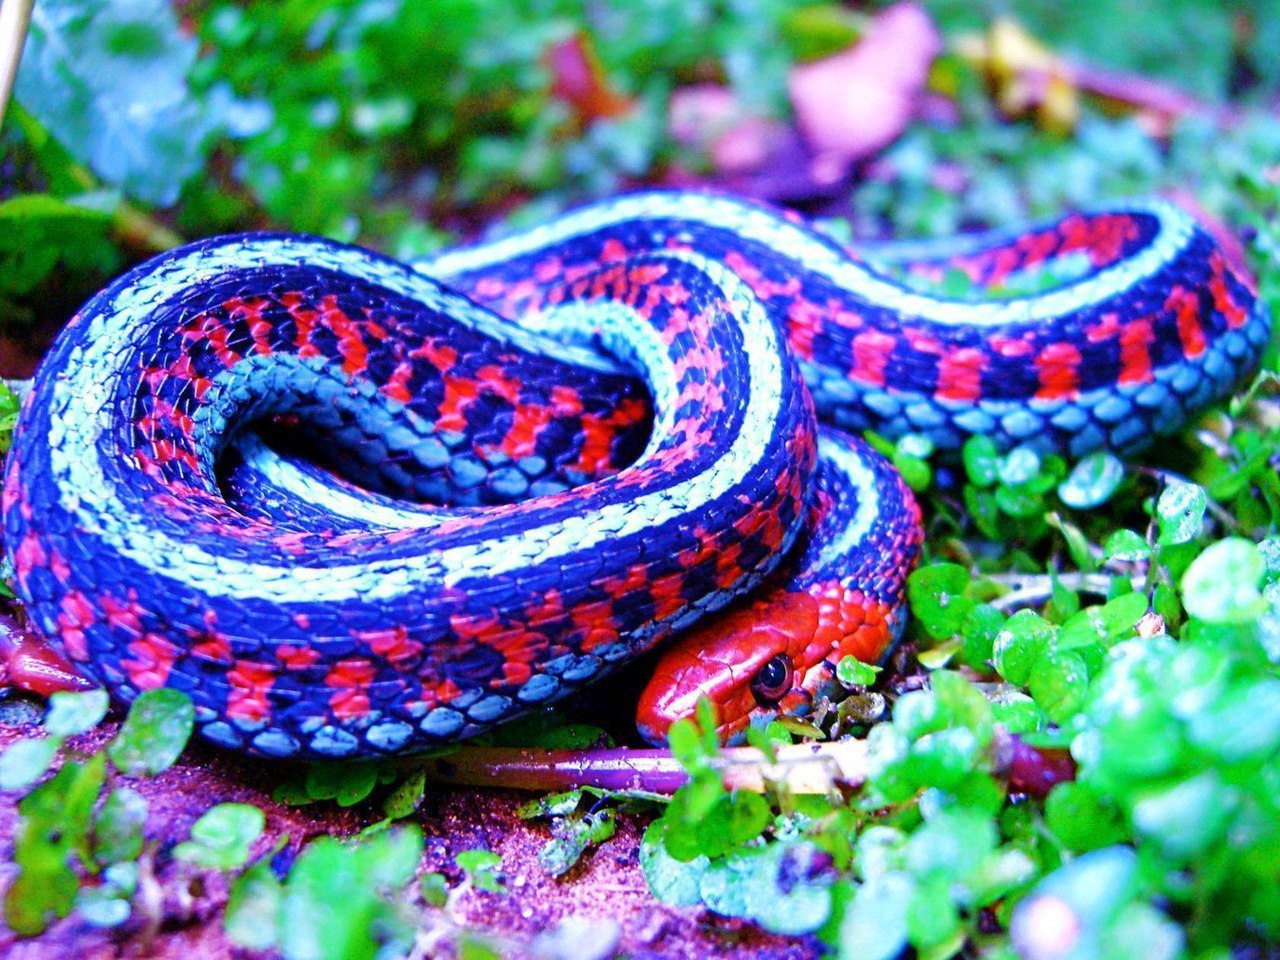 Самые красивые змей в мире. Калифорнийская подвязочная змея. Подвязочная змея (Thamnophis sirtalis). Королевская ошейниковая змея. Калифорнийская подвязочная змея ядовитая.